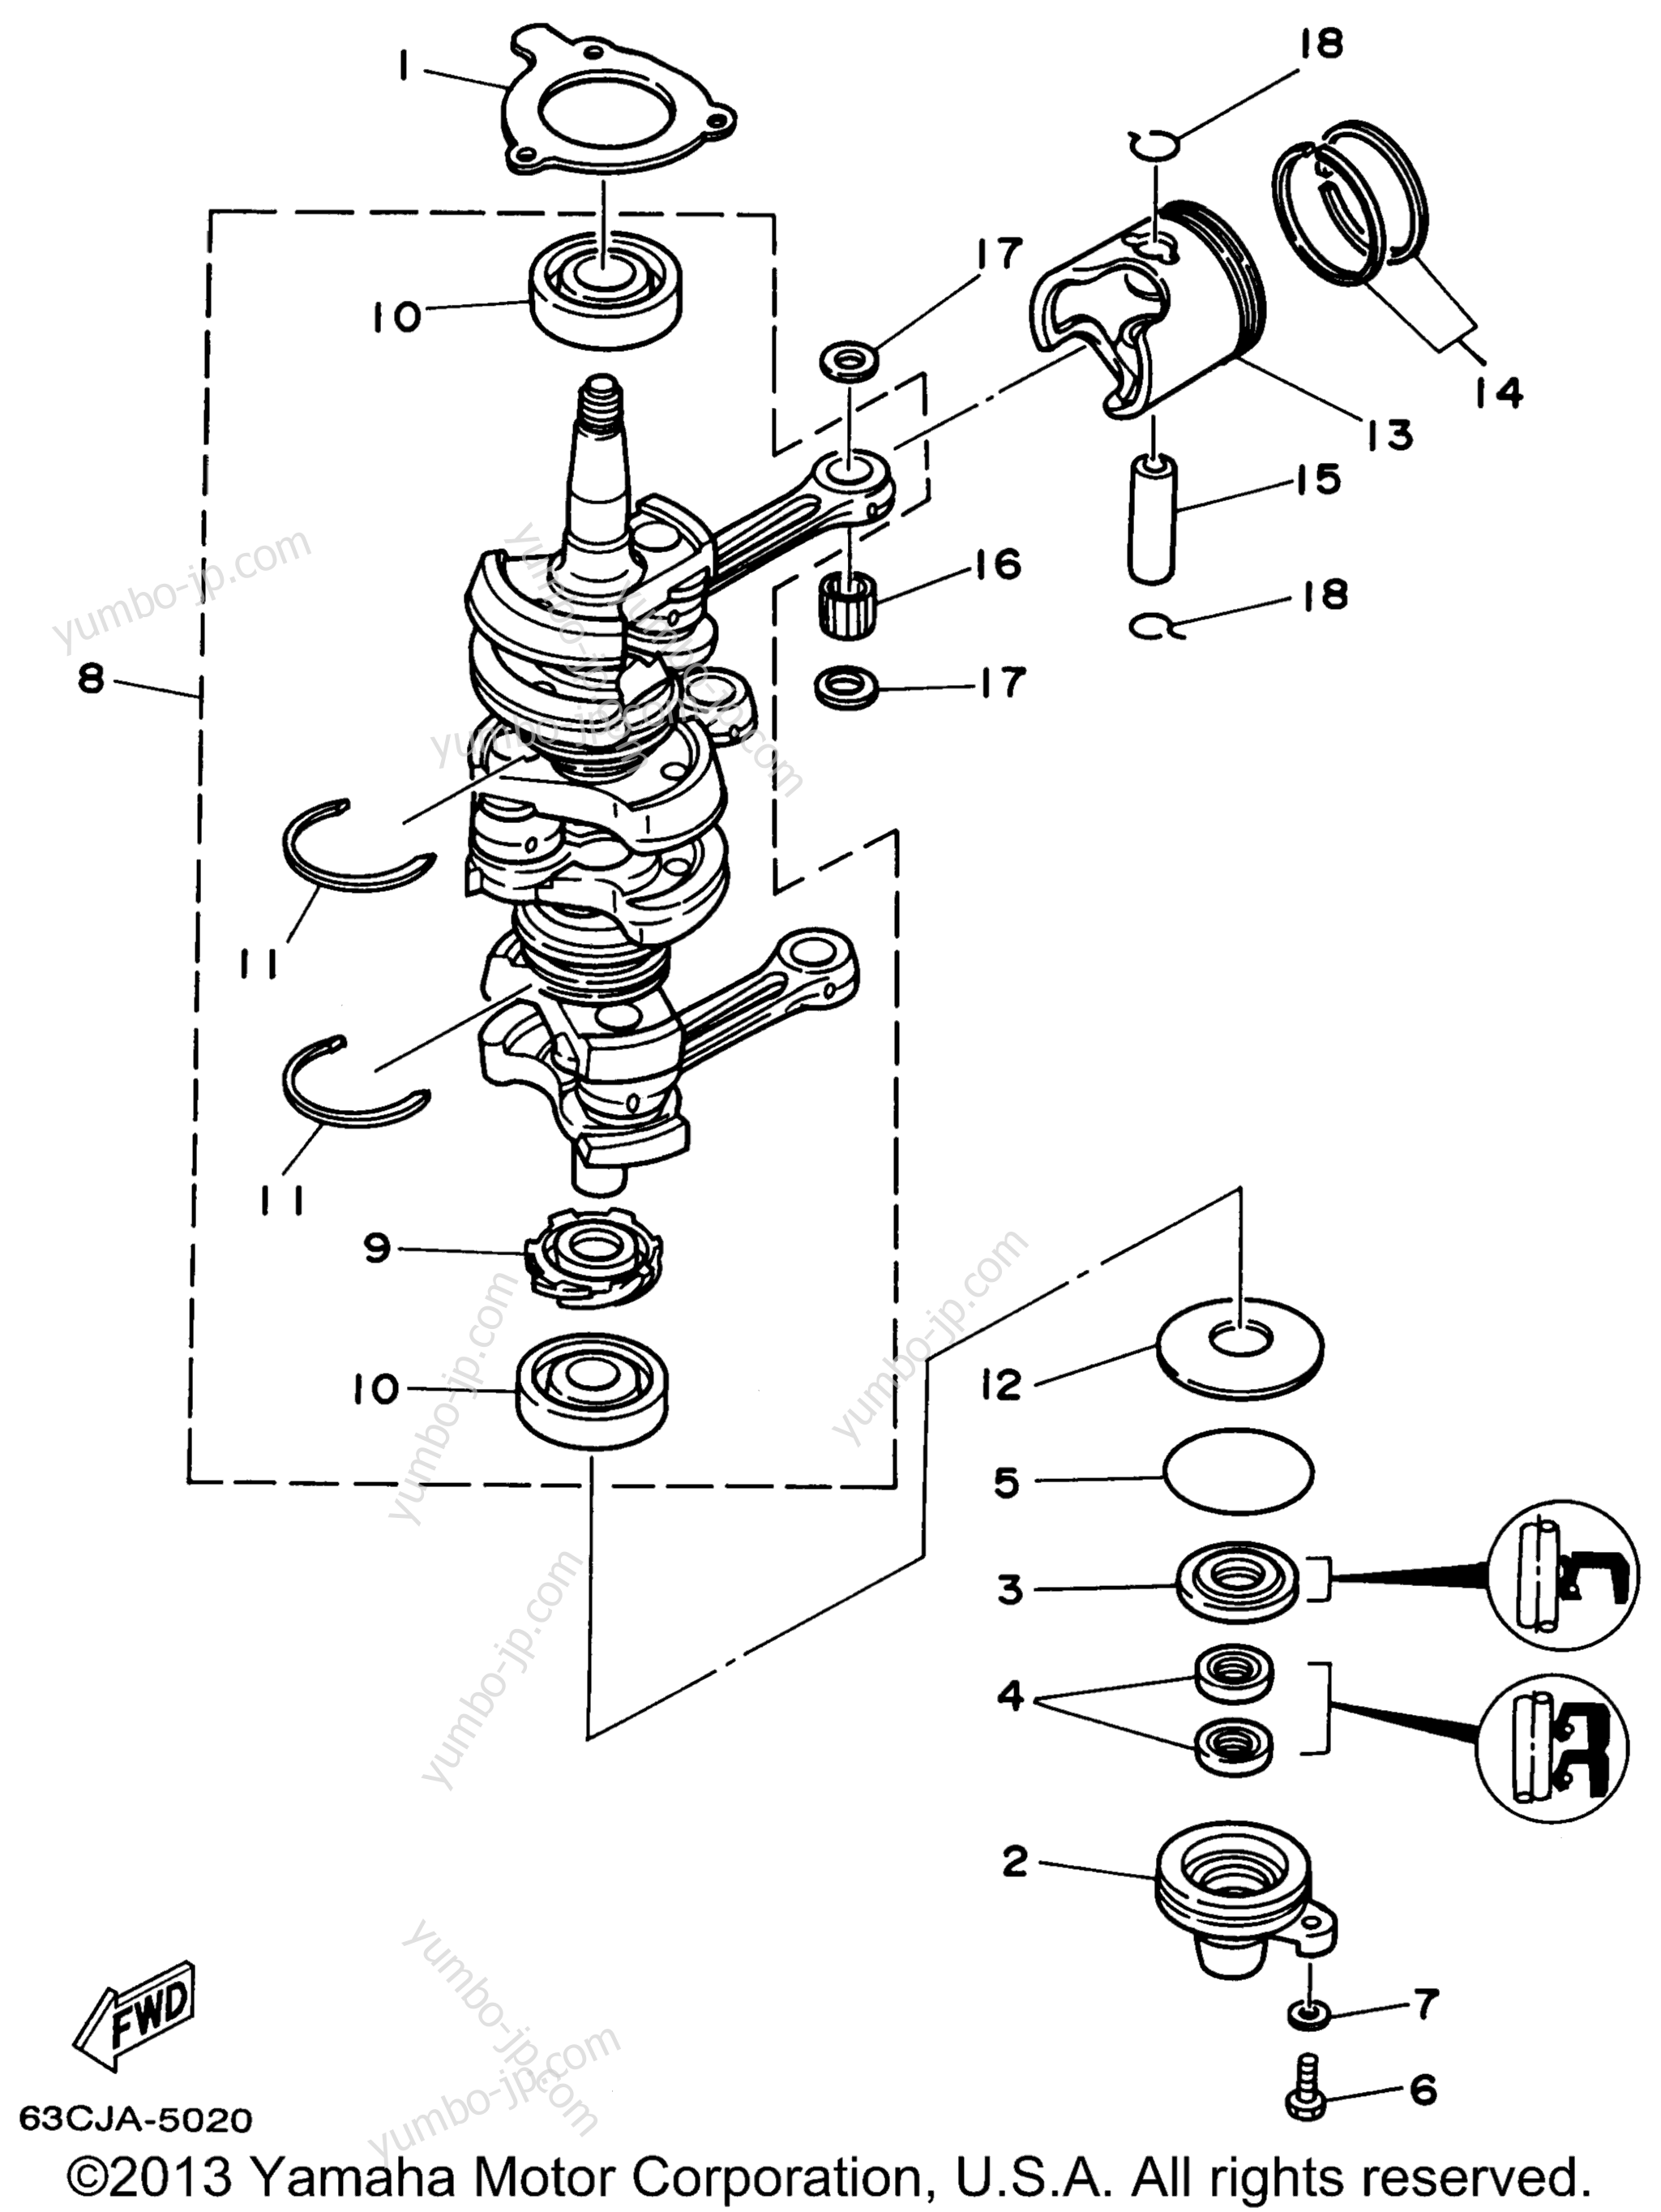 Коленвал и поршневая группа для лодочных моторов YAMAHA P40EJRW_THLW (50EJRW) 1998 г.